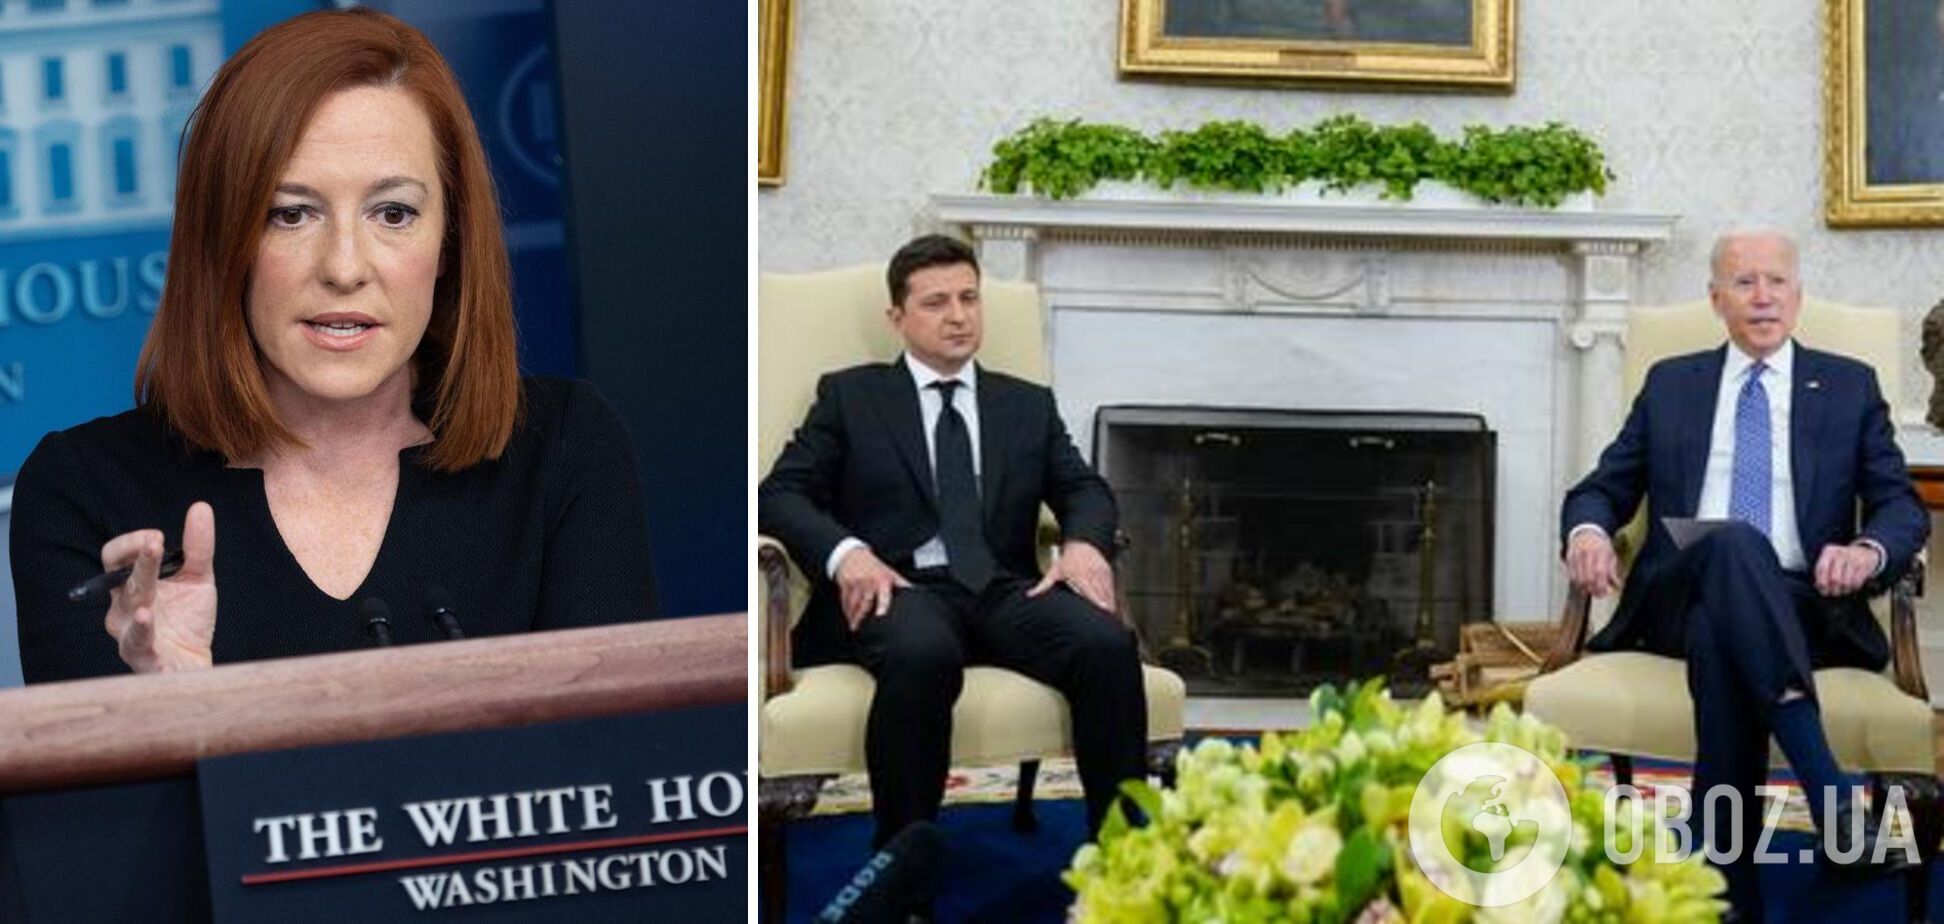 Джен Псаки: позиция официального Вашингтона в поддержку Украины не изменилась